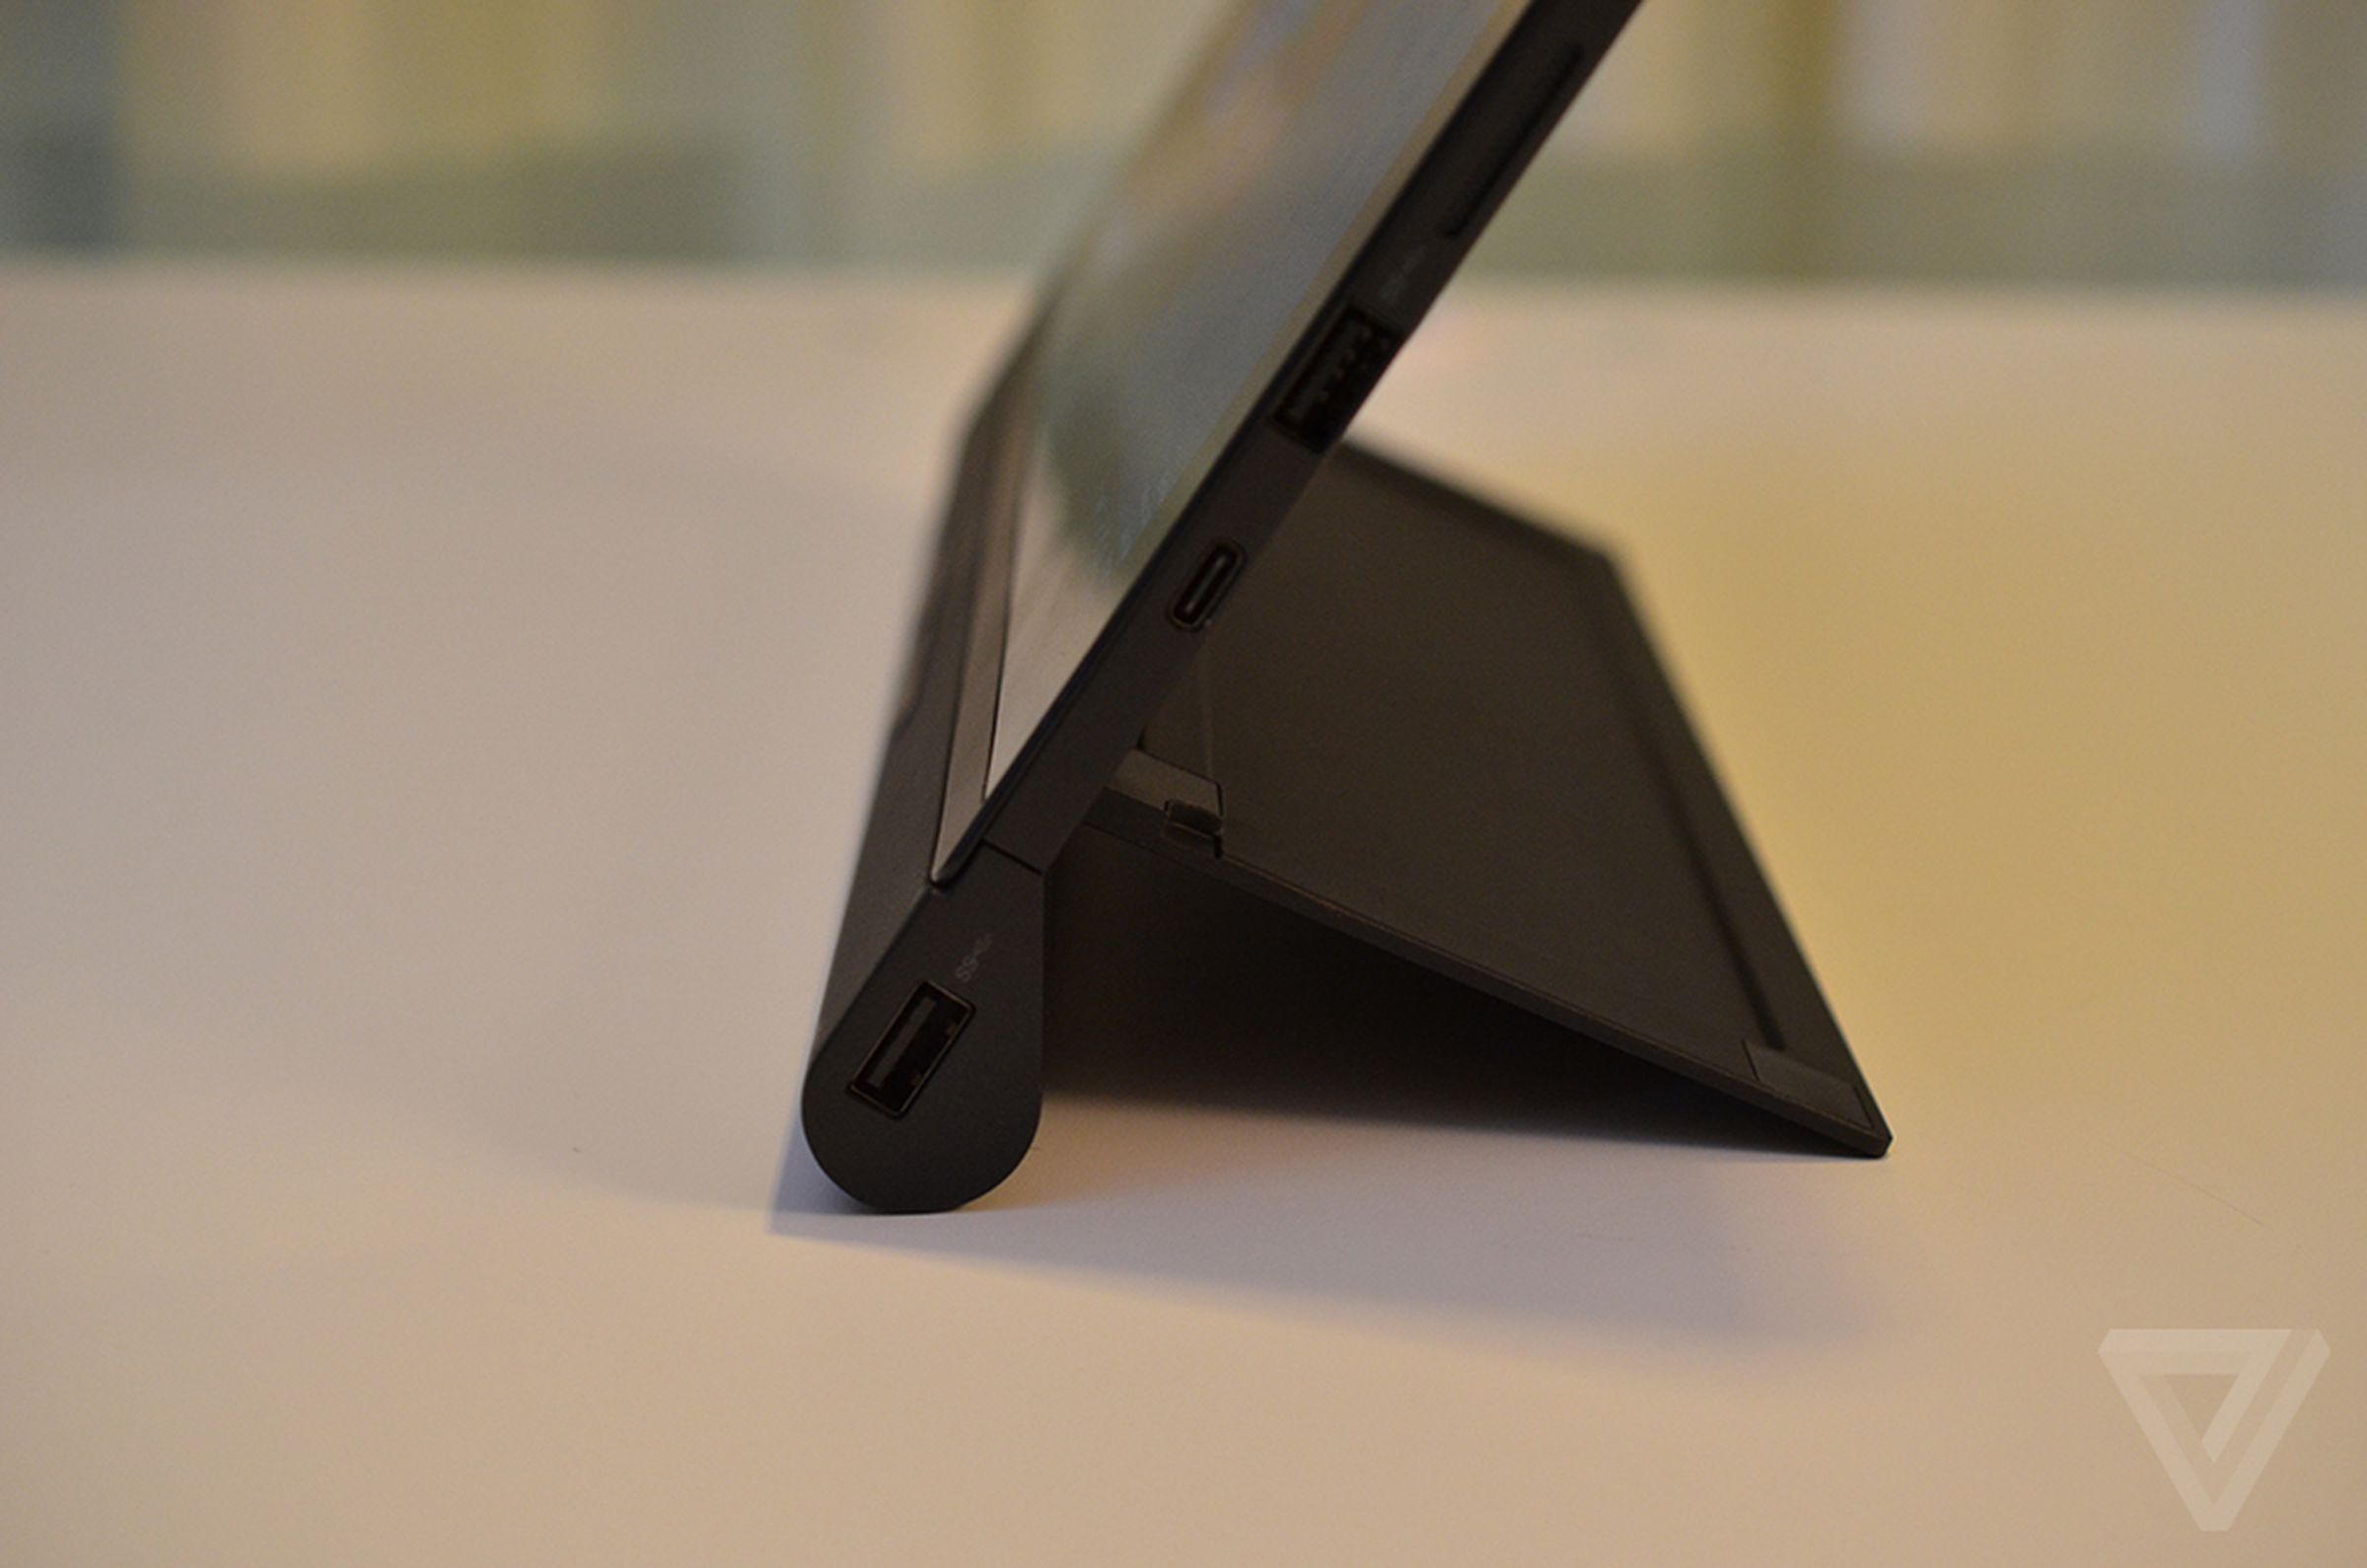 Lenovo X1 Tablet hands-on photos